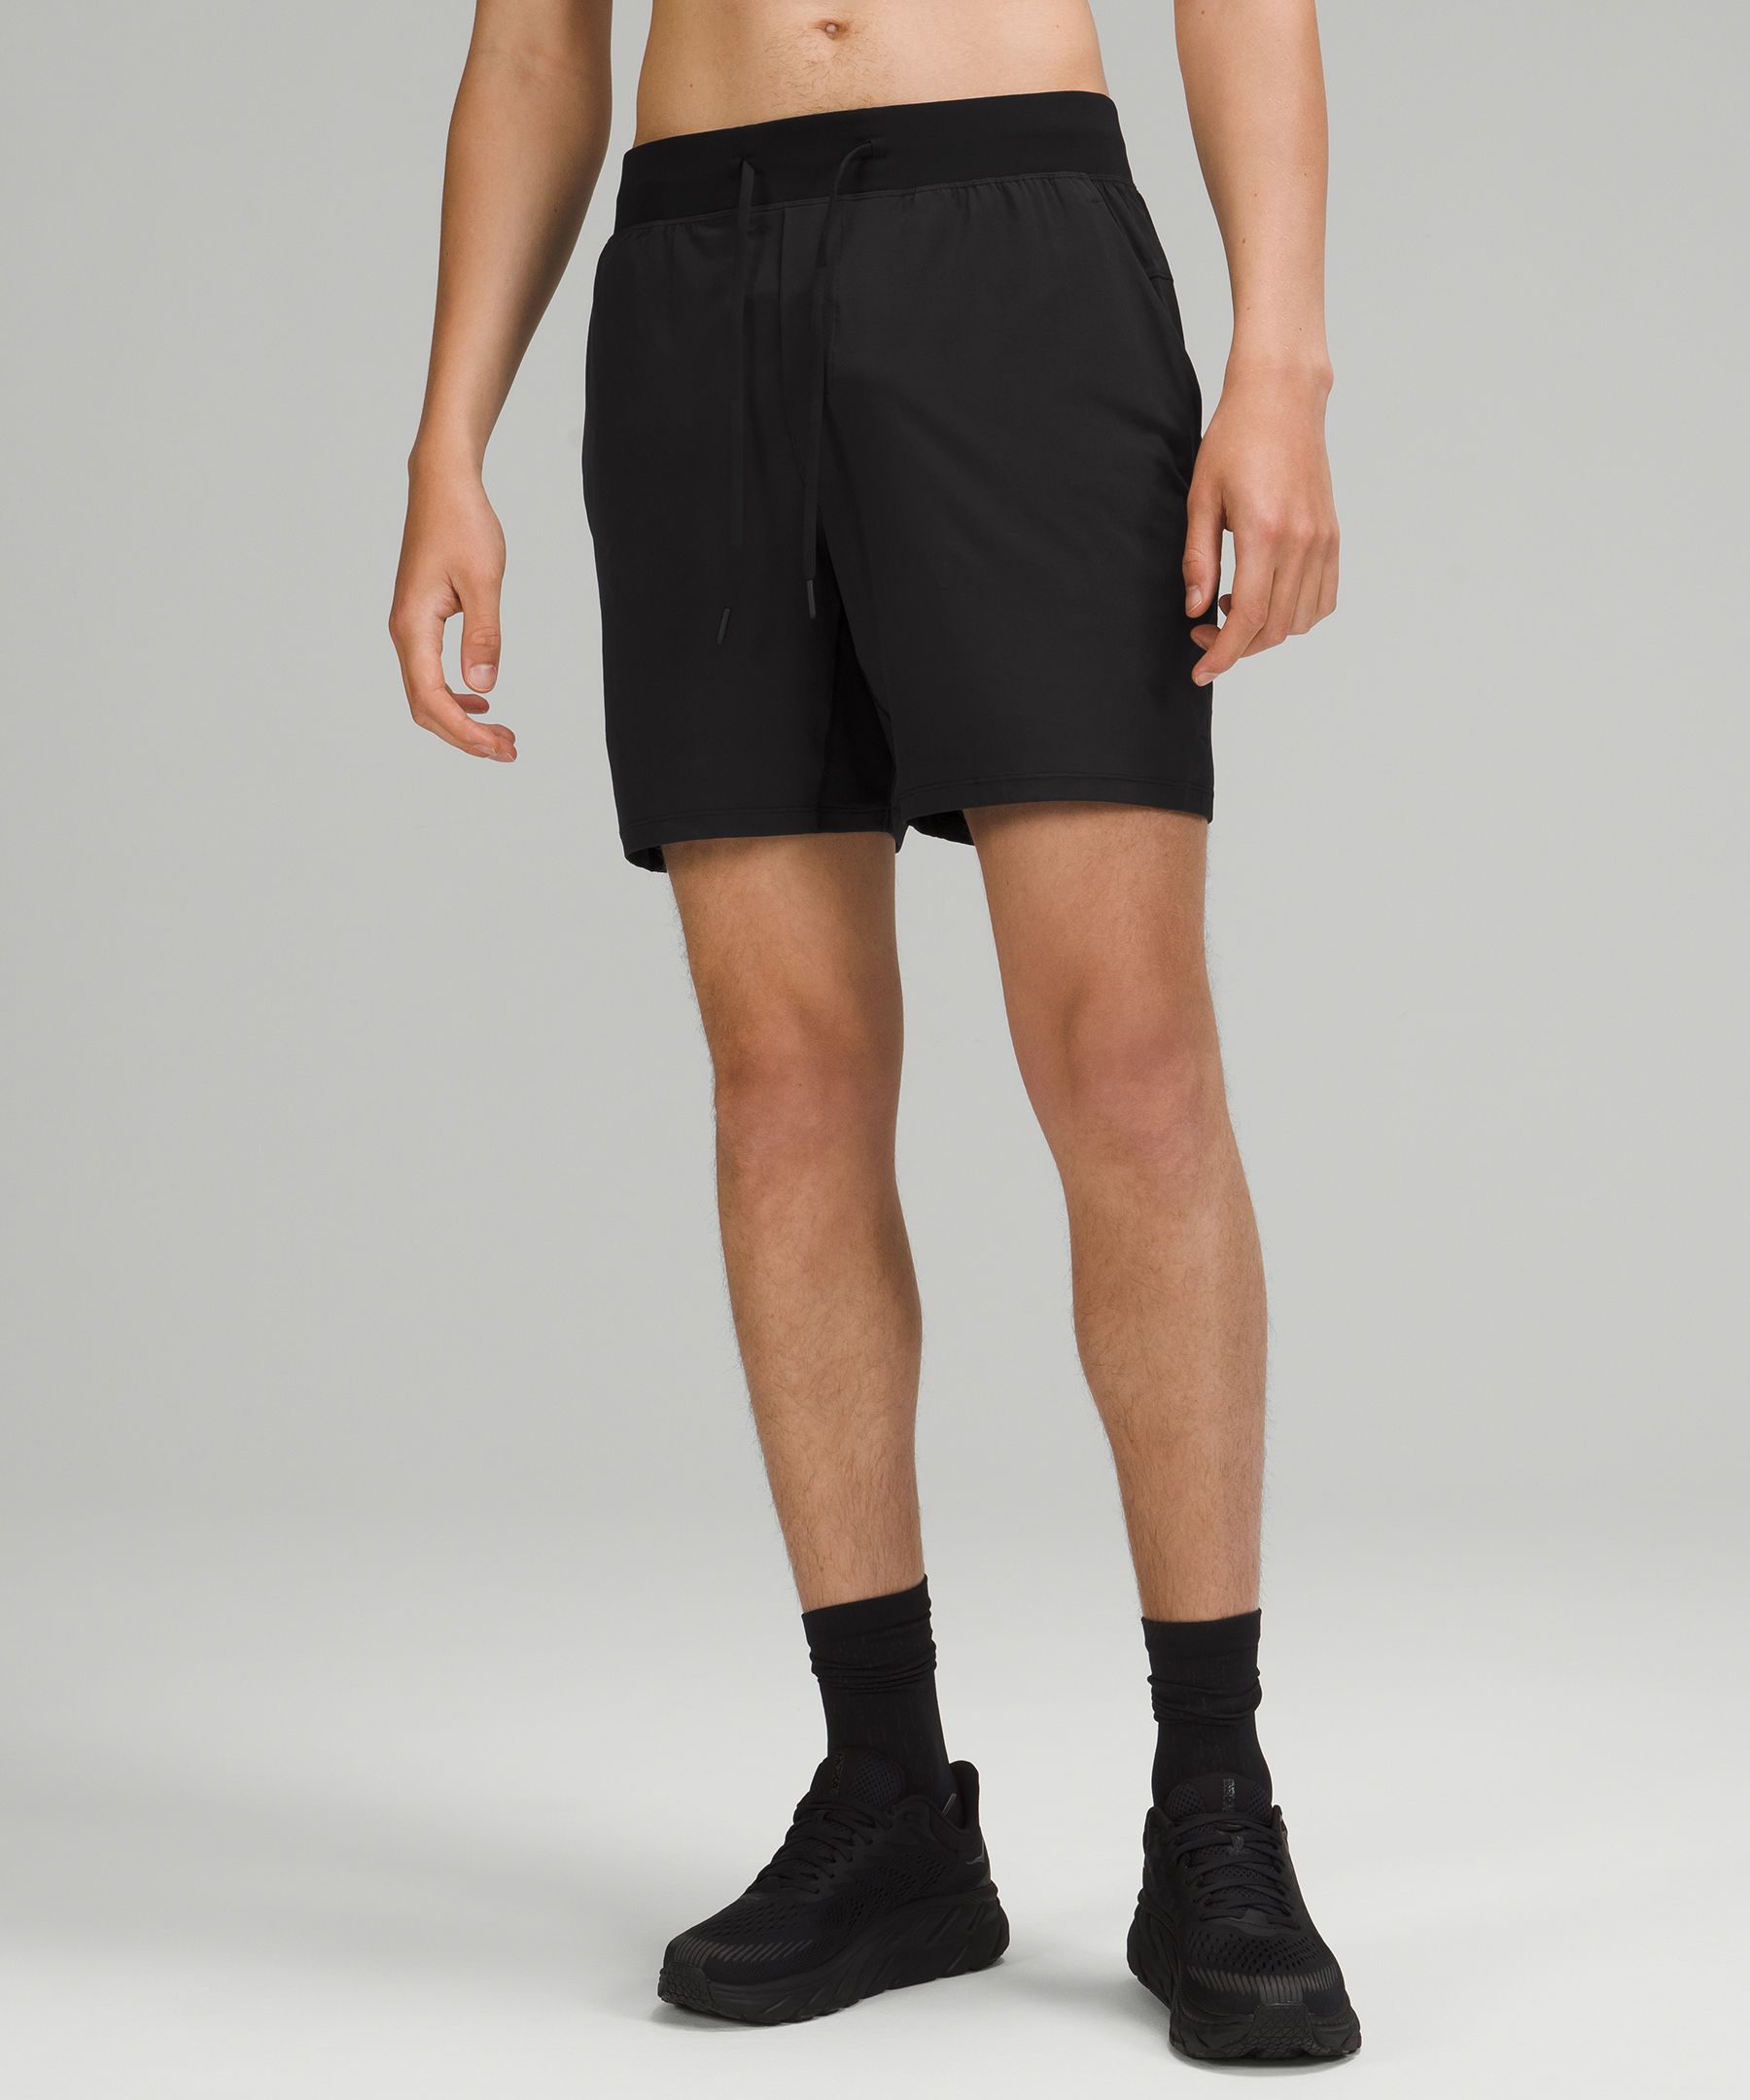 lululemon men's 7 inch shorts